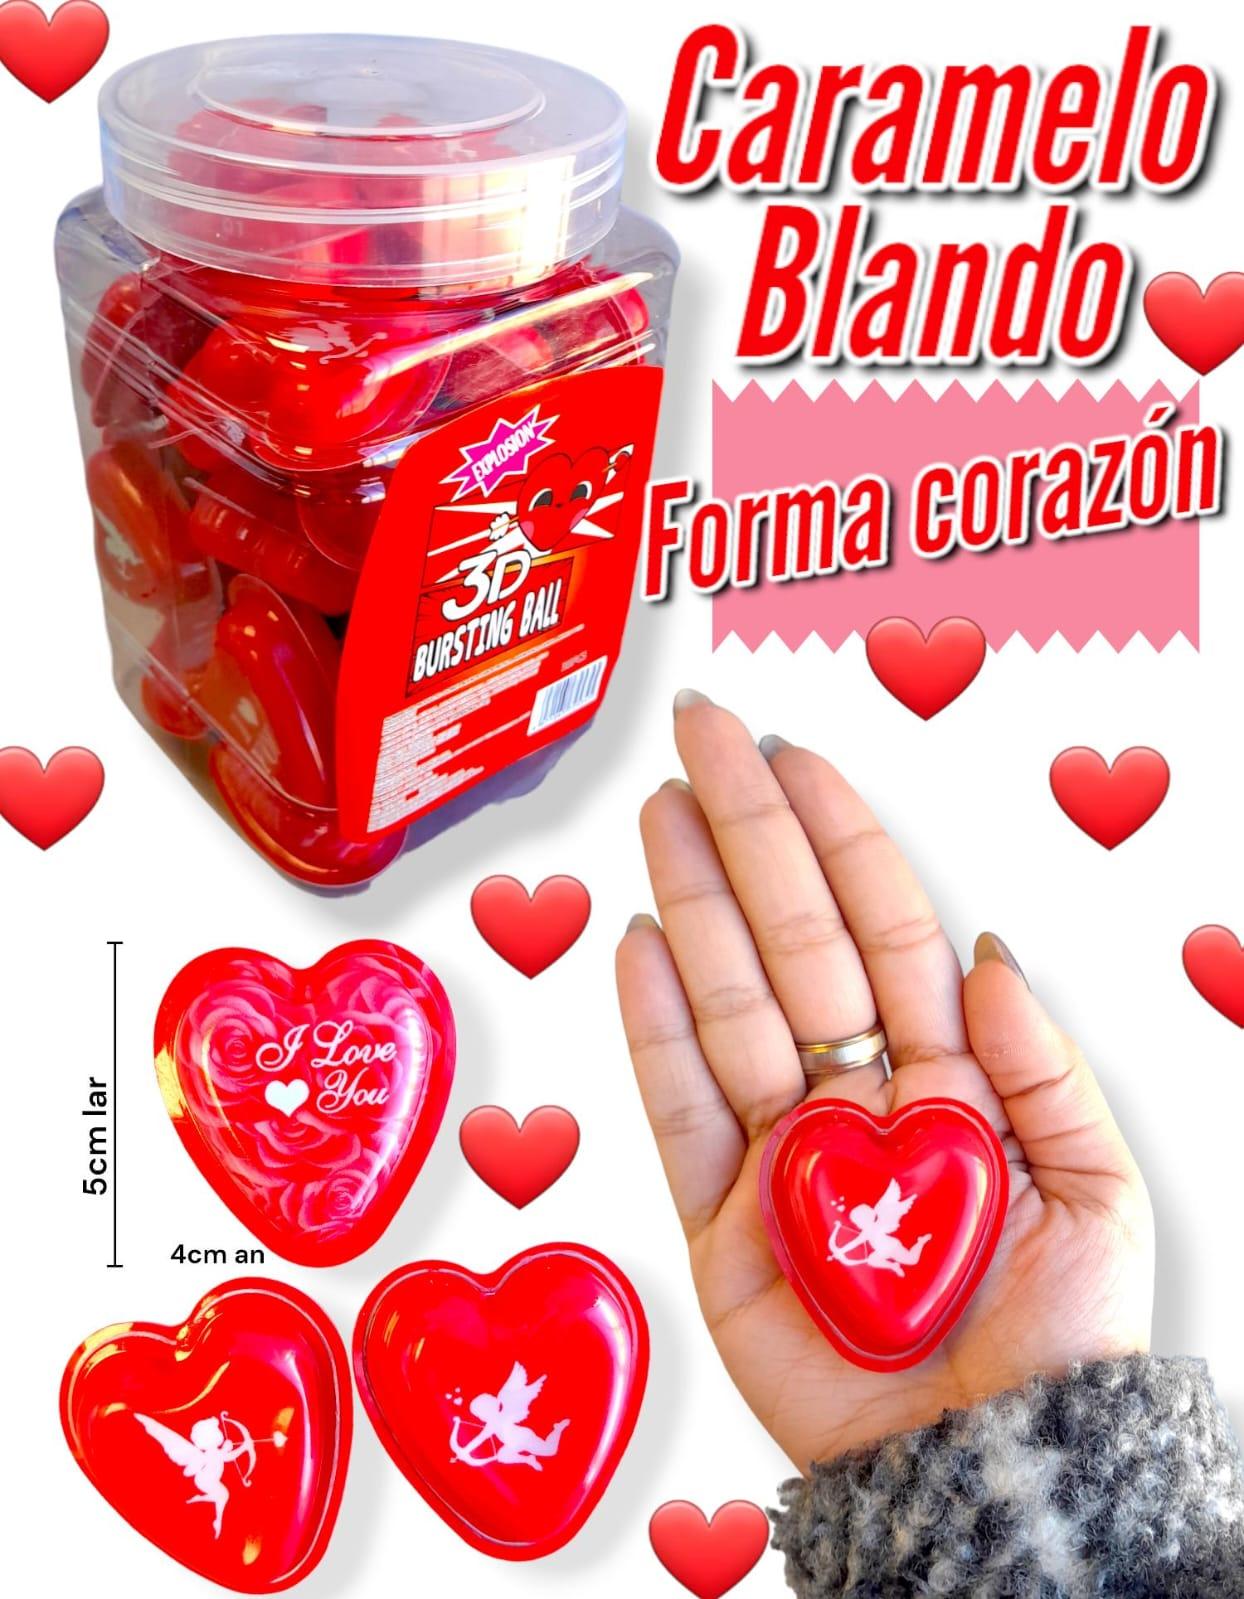 Caramelo Blando Forma CORAZON 